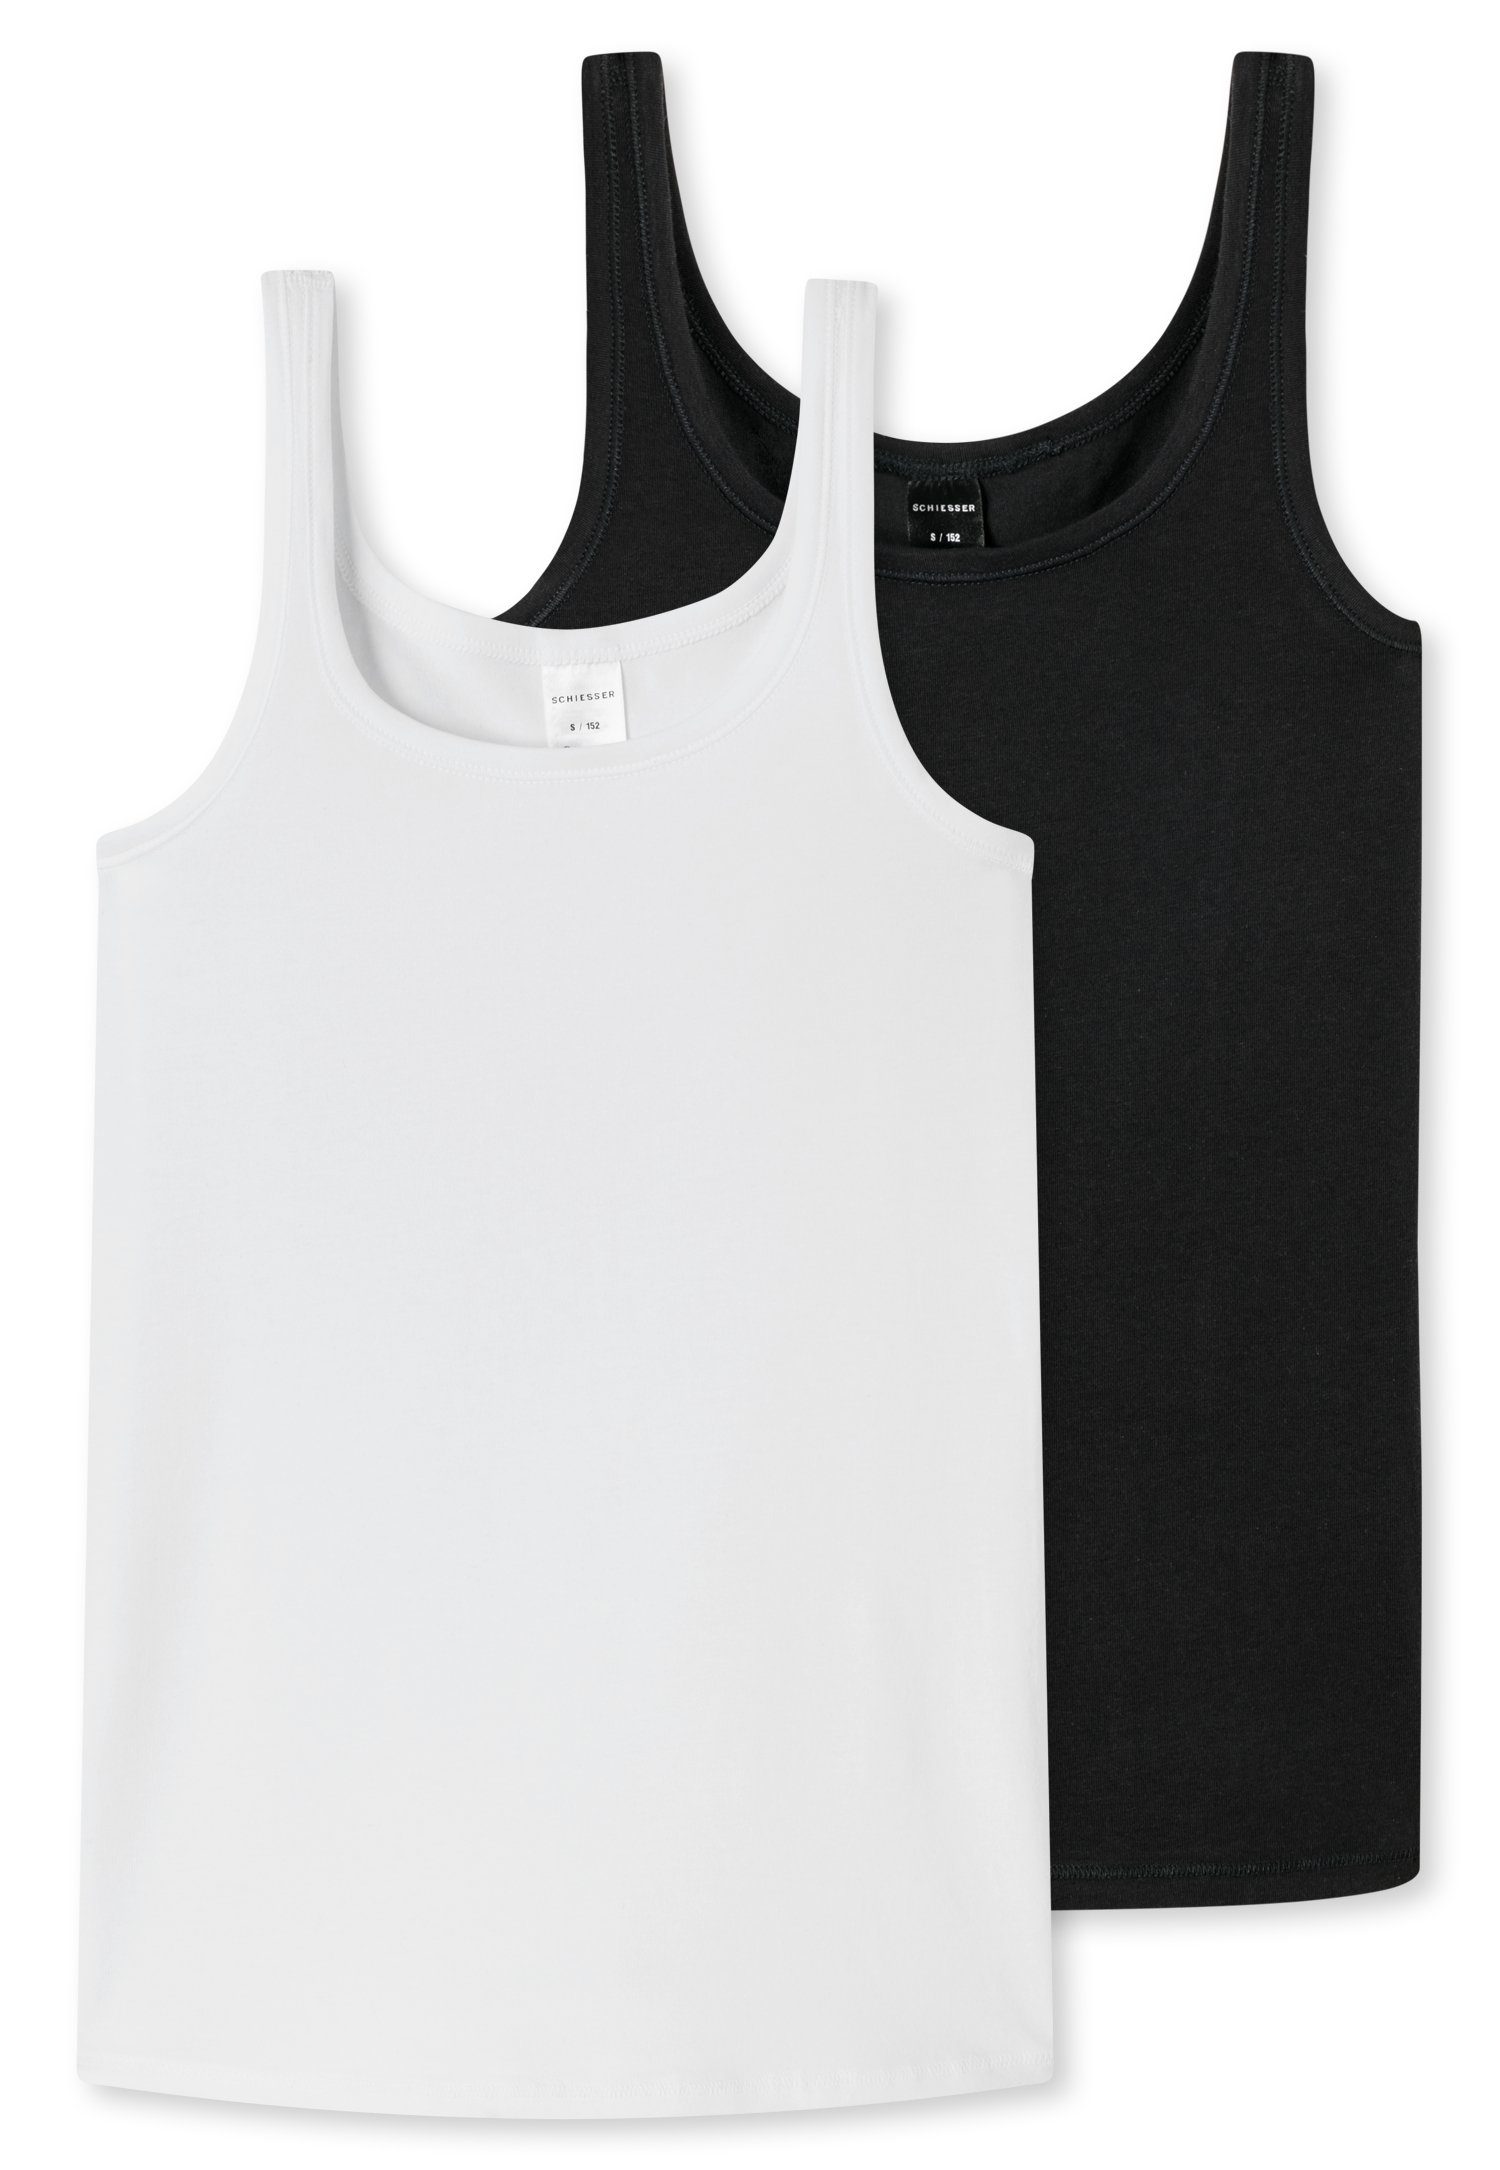 breiten (2er-Pack) Unterhemd mit Schiesser Trägern schwarz/weiß